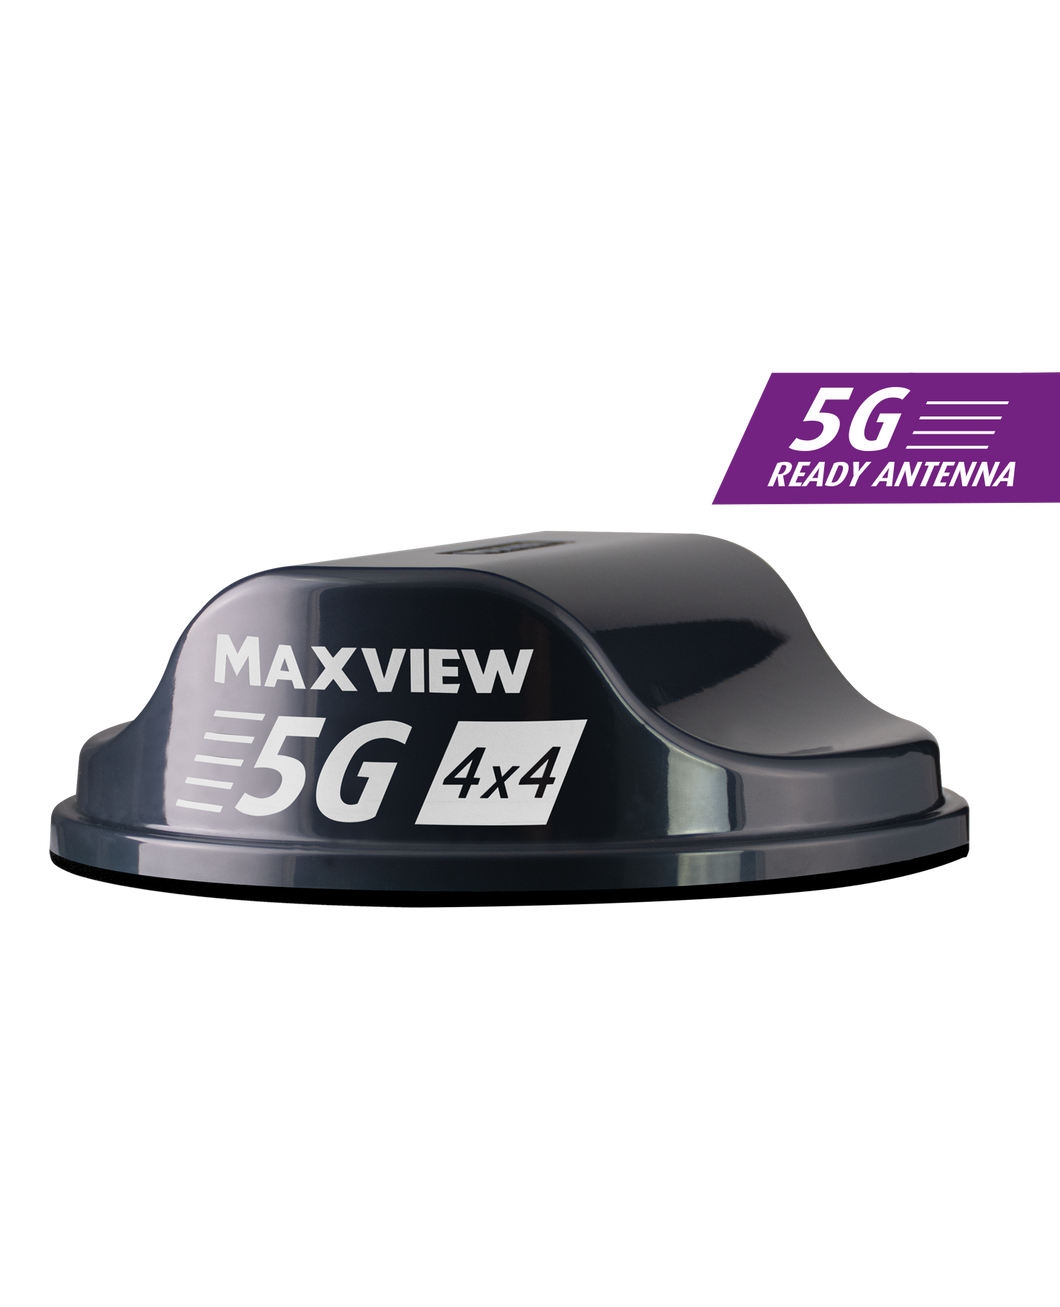 MAXVIEW ROAM 5G mit Appsteuerung - Paket schwarz oder weiß inkl. kostenfreier Datenkarte und 10 GB Startguthaben